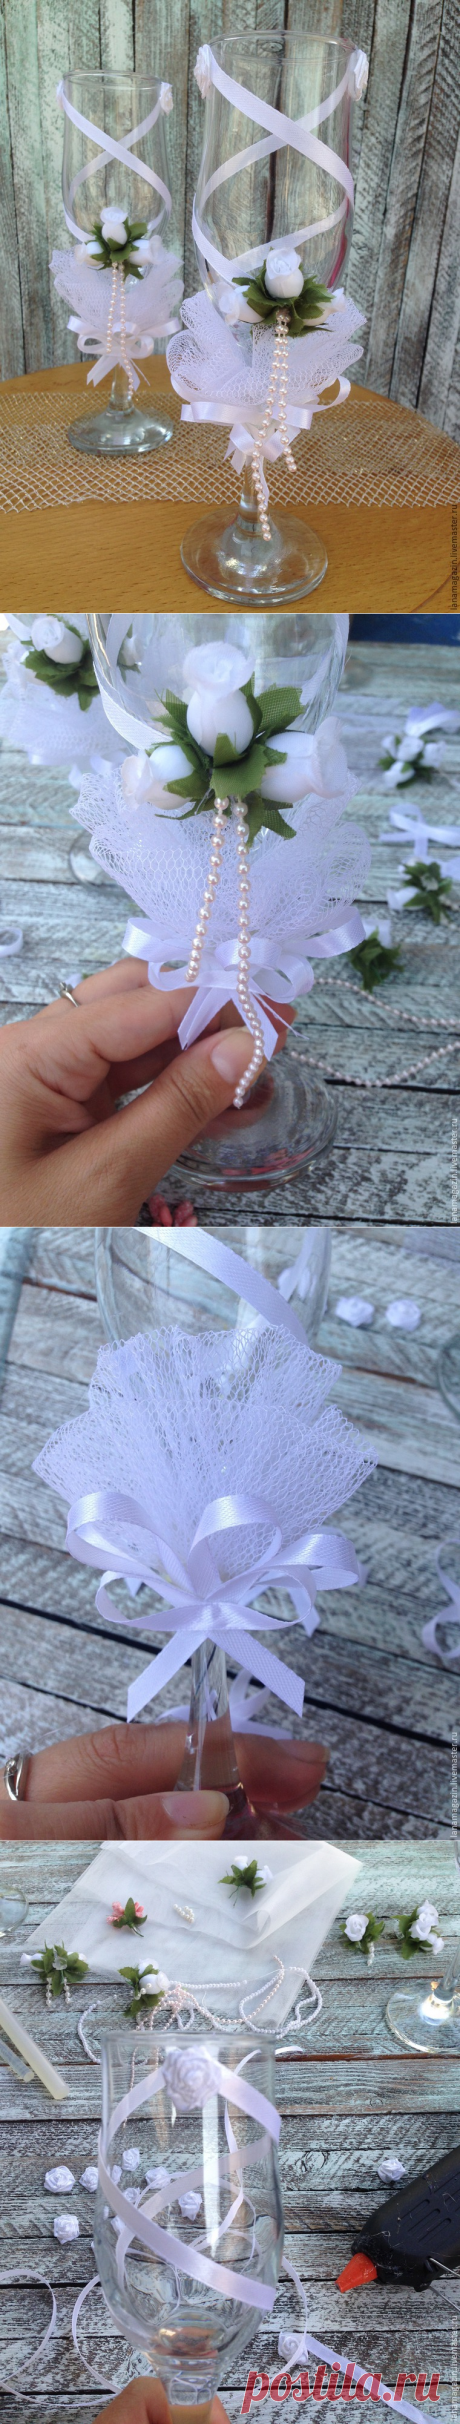 Как украсить свадебные бокалы своими руками - Ярмарка Мастеров - ручная работа, handmade